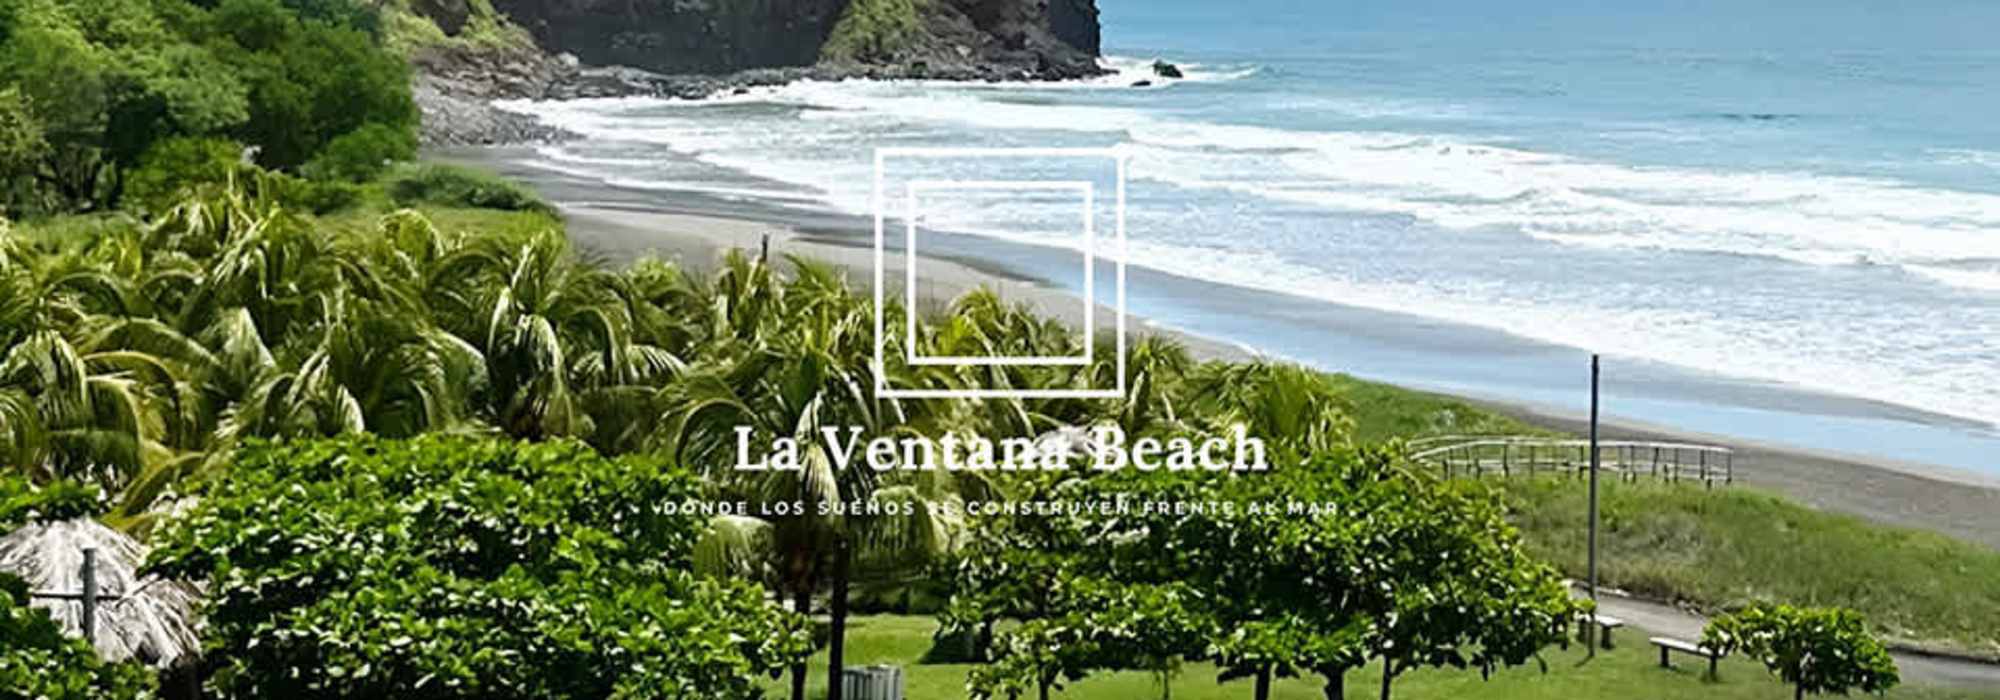 Playa La Ventana Beach Surf City 2 - Venta de Terrenos